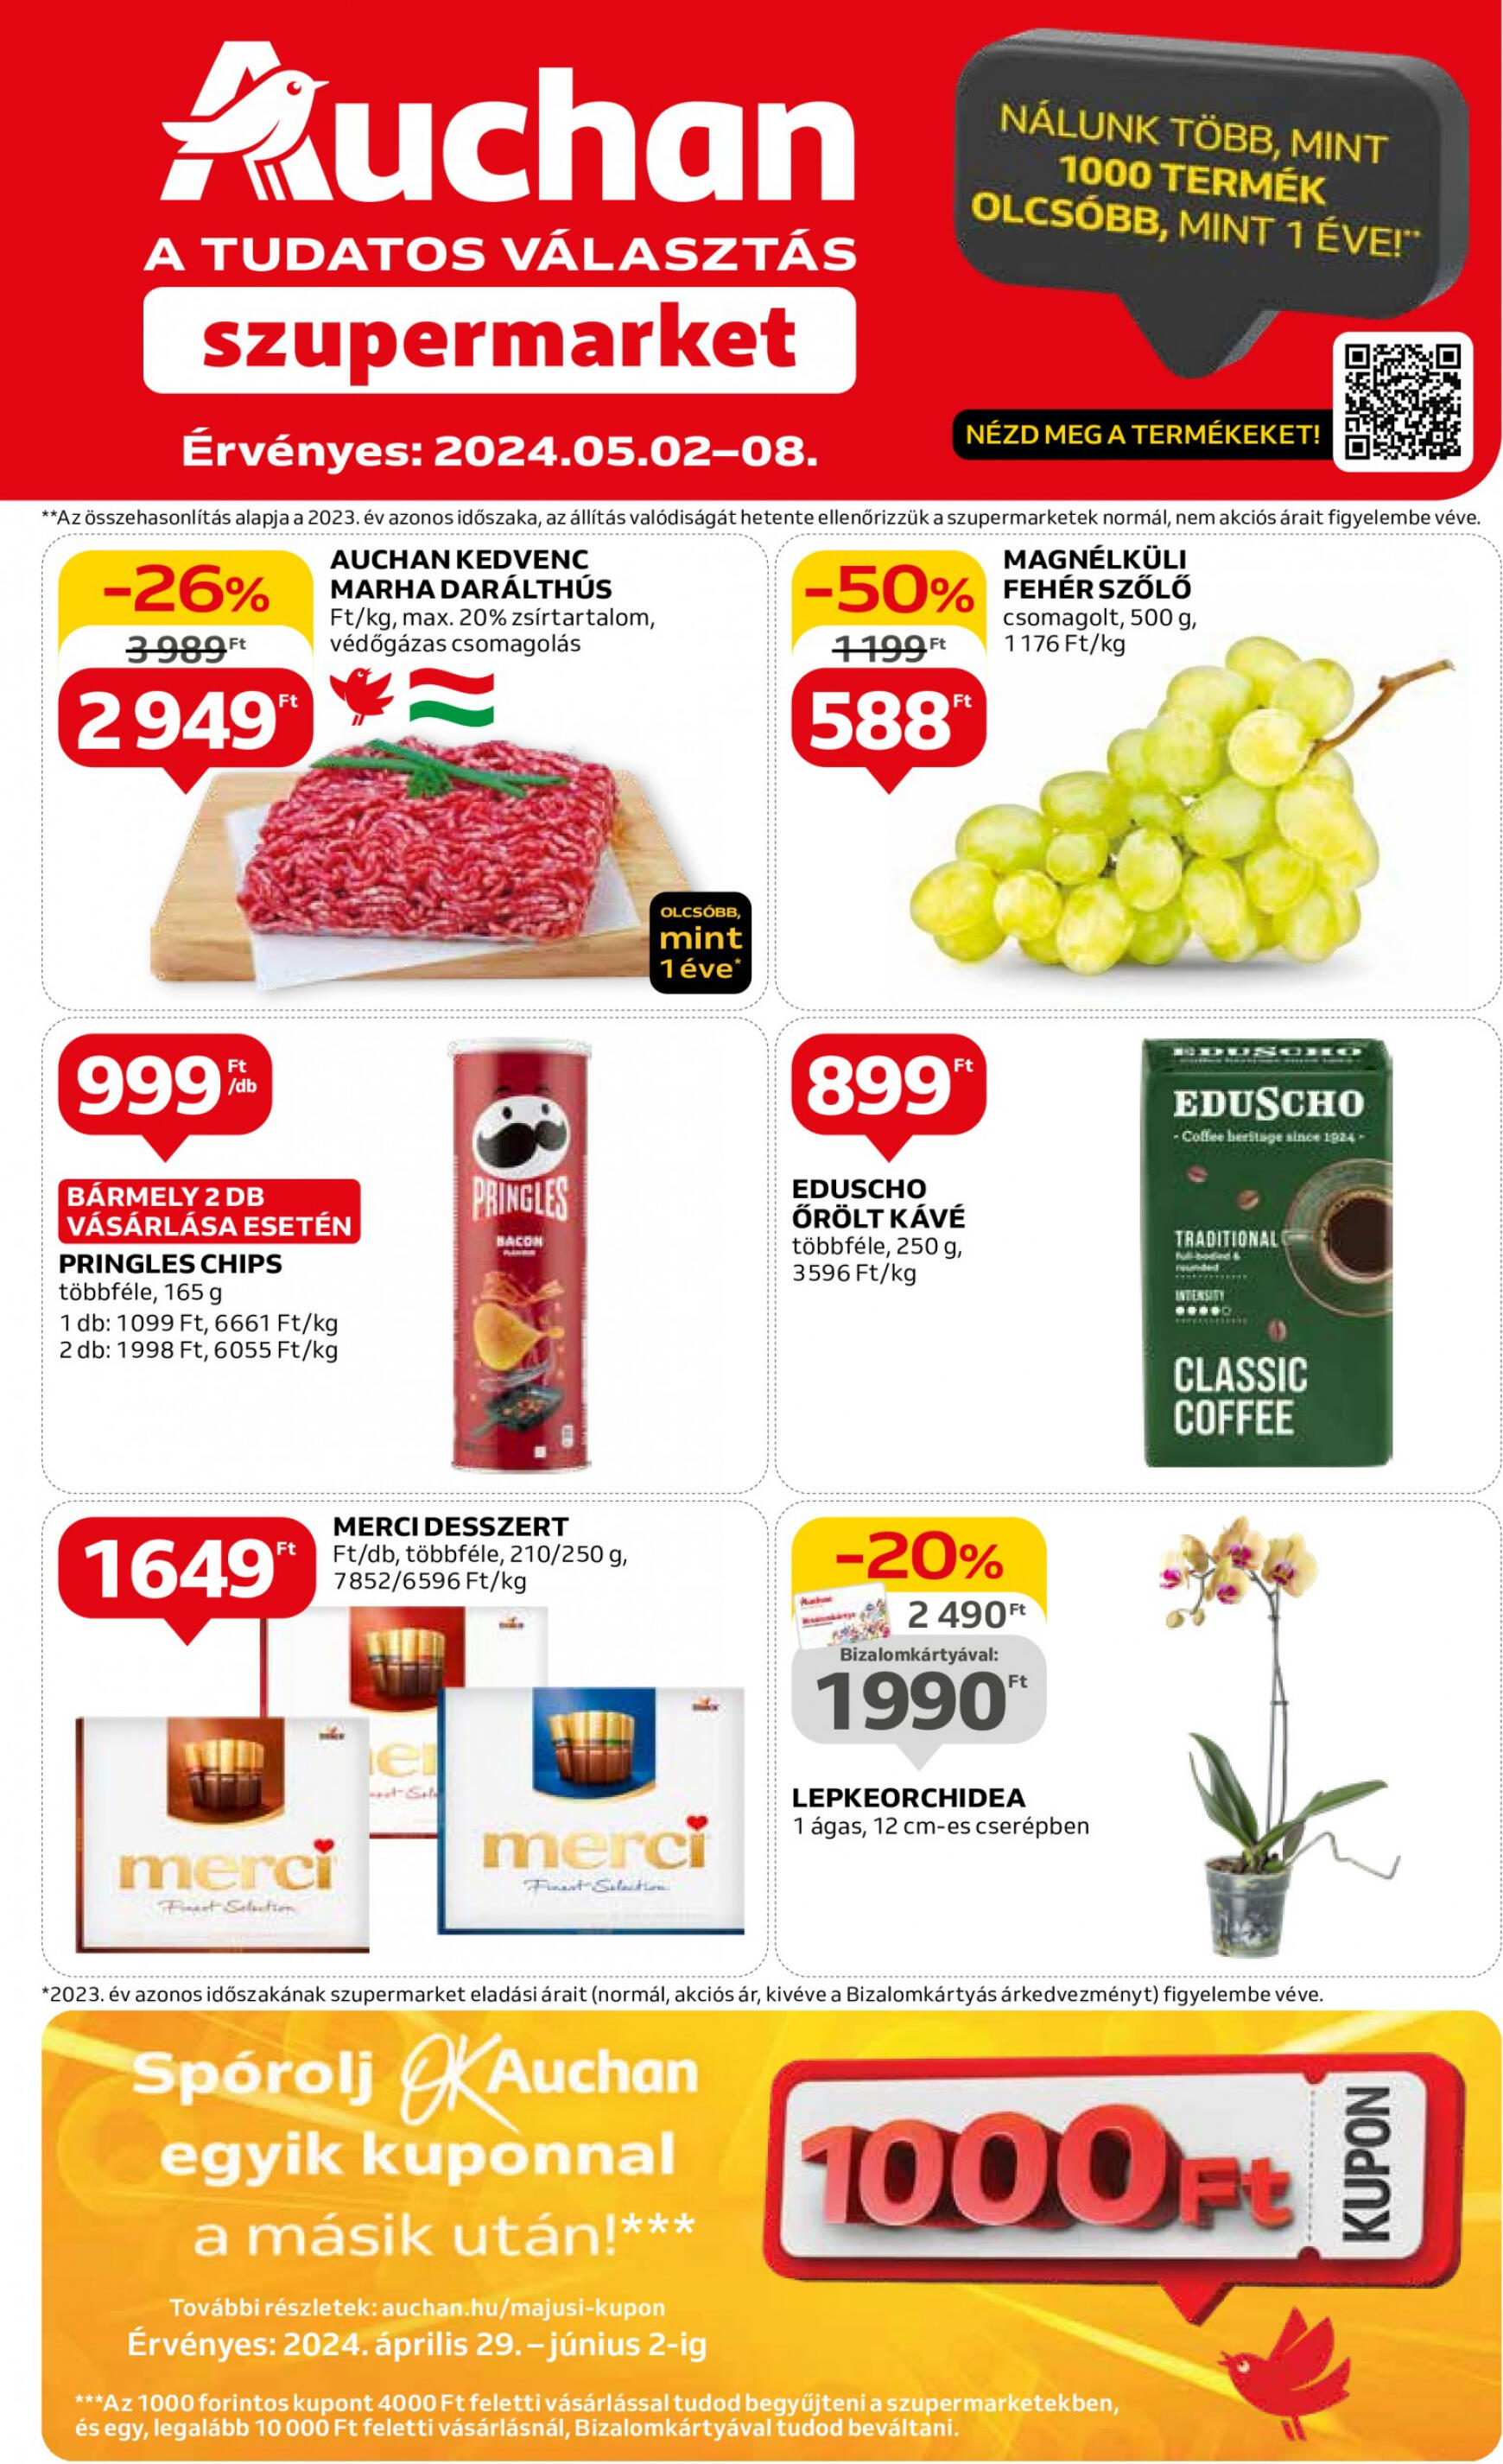 auchan - Aktuális újság Auchan szupermarket 05.02. - 05.08.